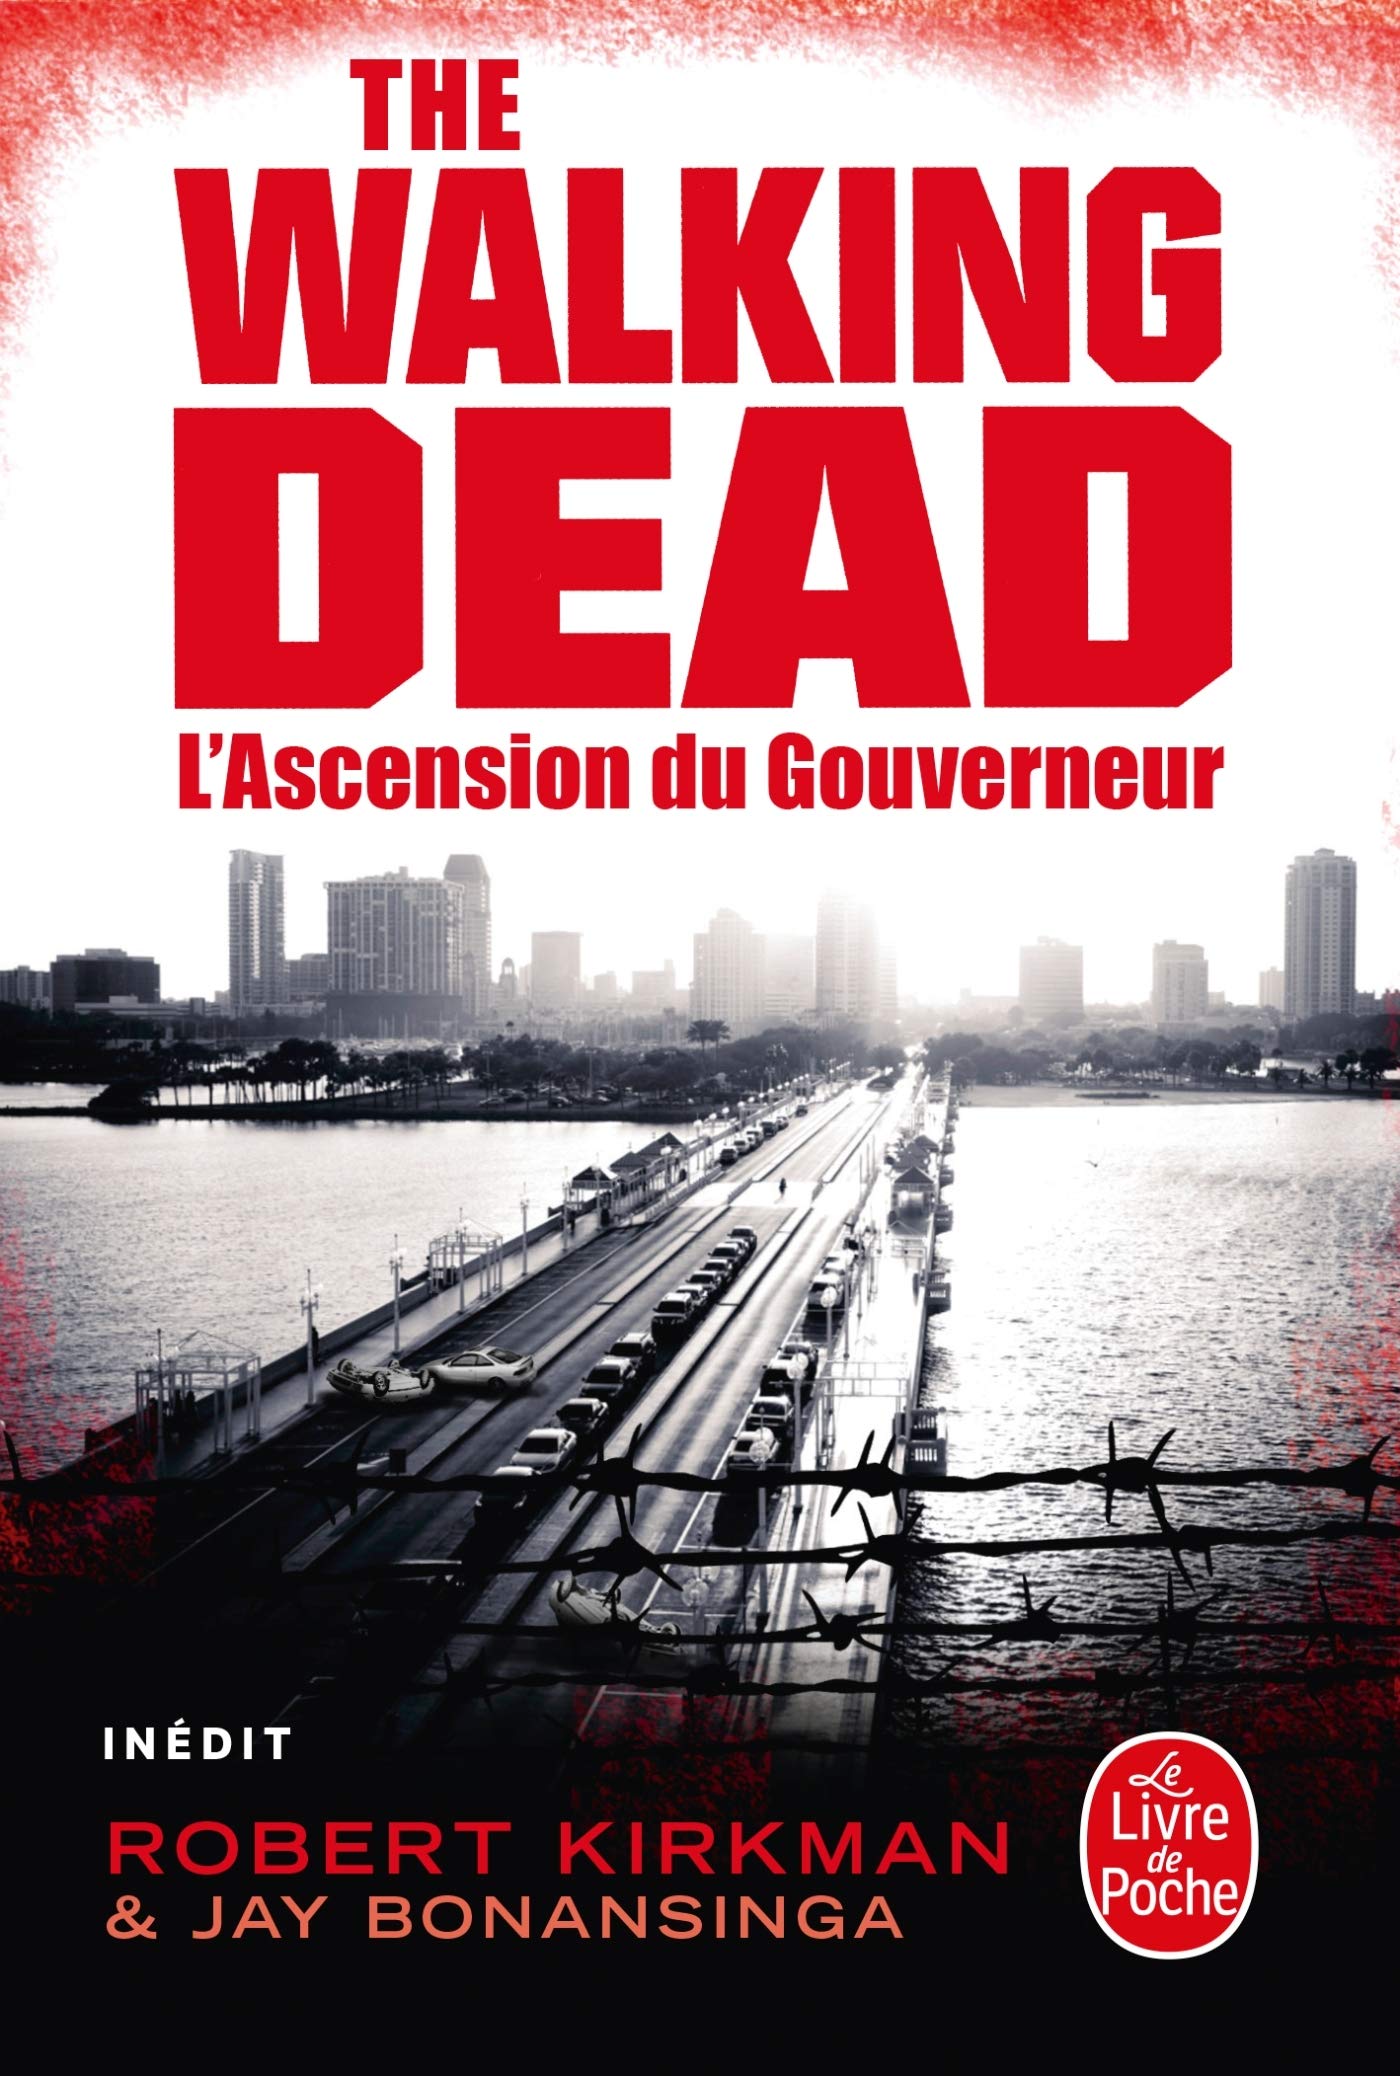 Livre ISBN 2253134821 The Walking Dead (FR) # 1 : L'ascension du gouverneur (Robert Kirkman)